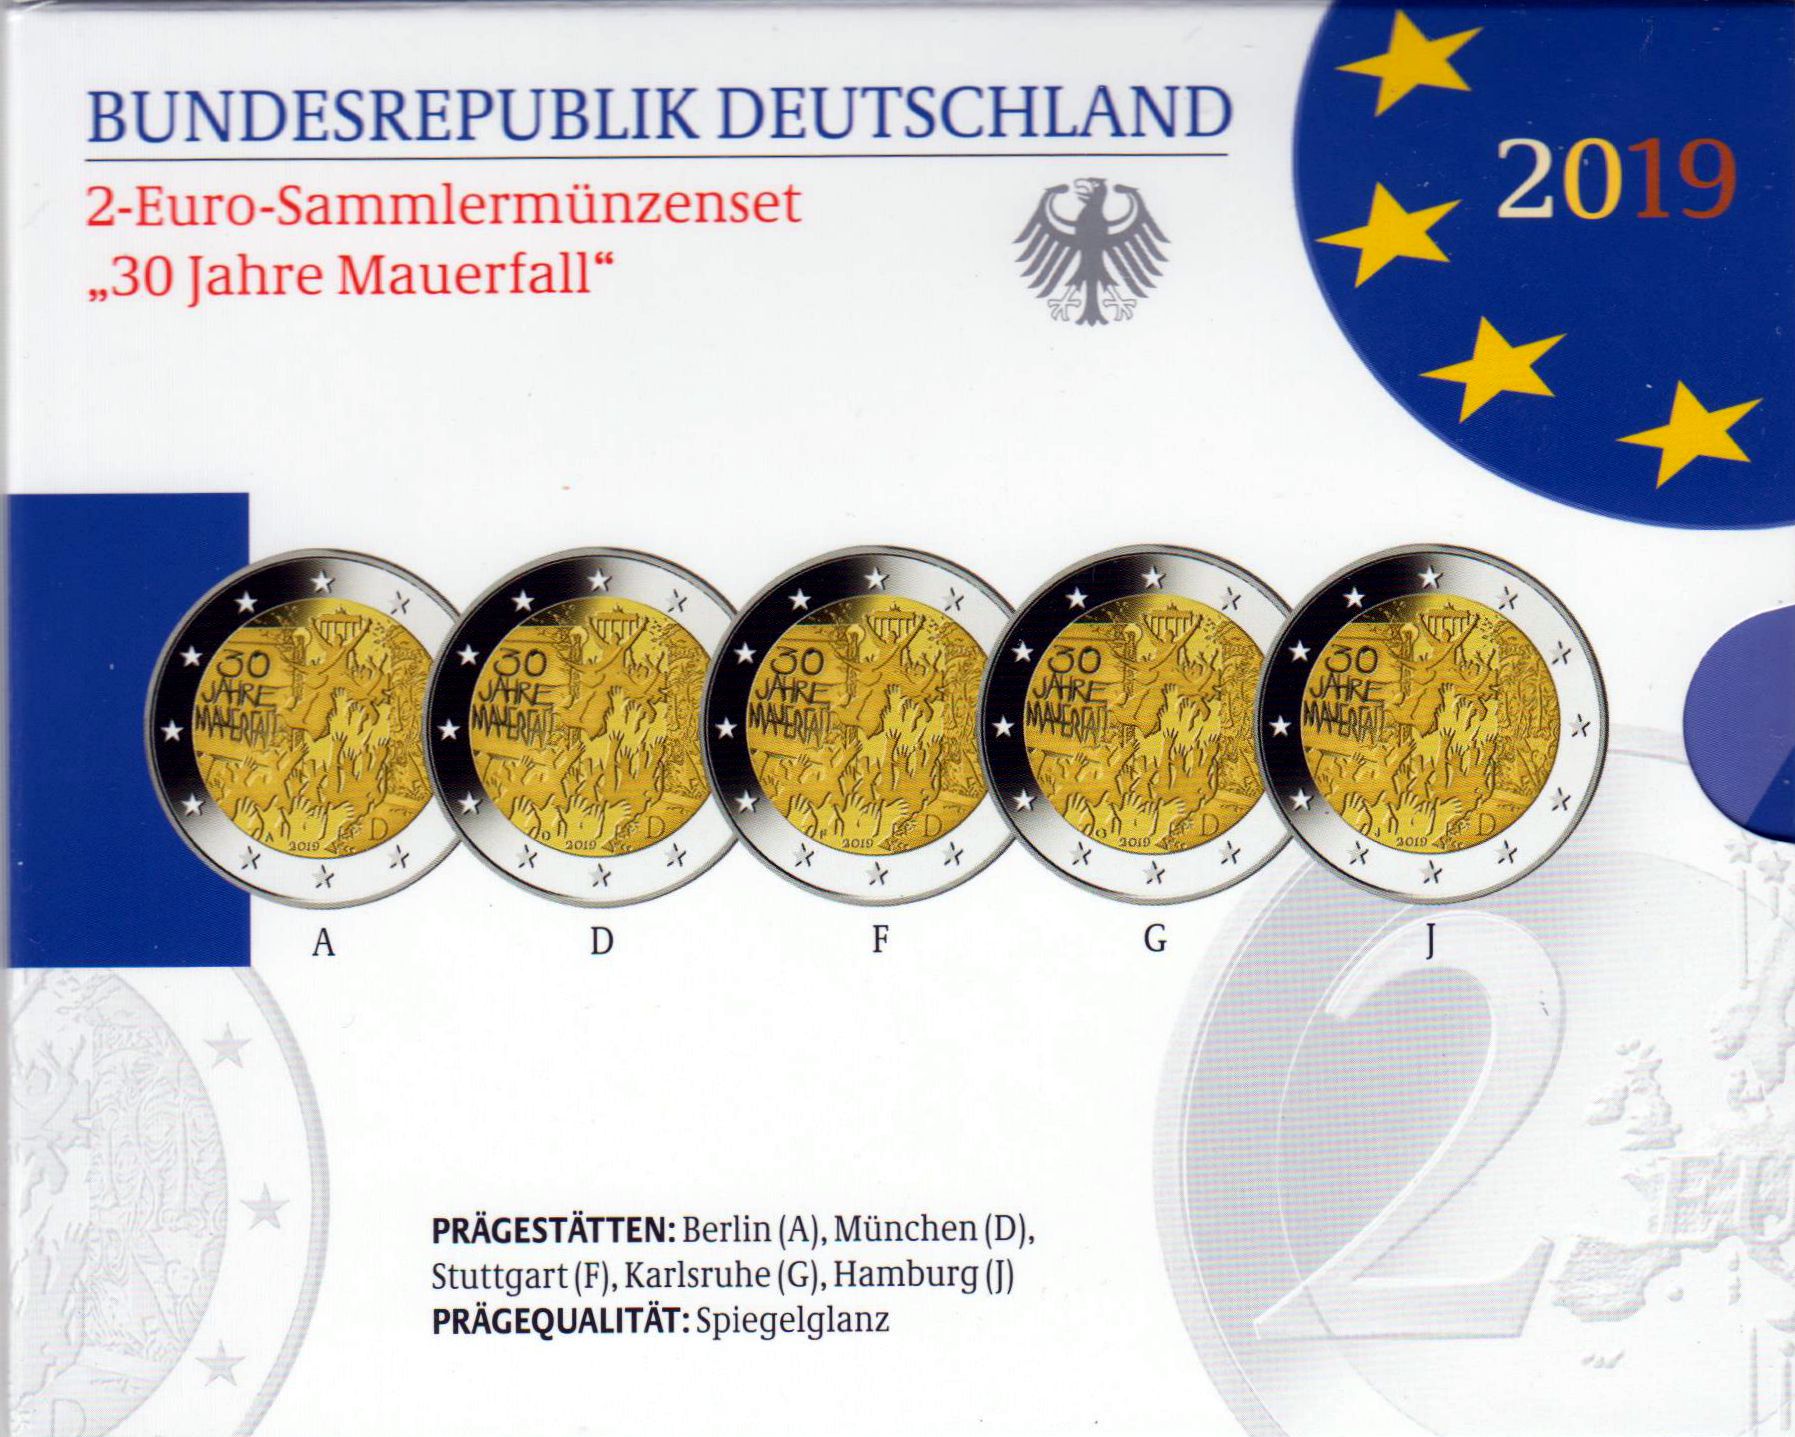 2 Euro Sammlermünzenset "Mauerfall" 2019 mit allen 5 Münzen ADFGJ in Spiegelglanz